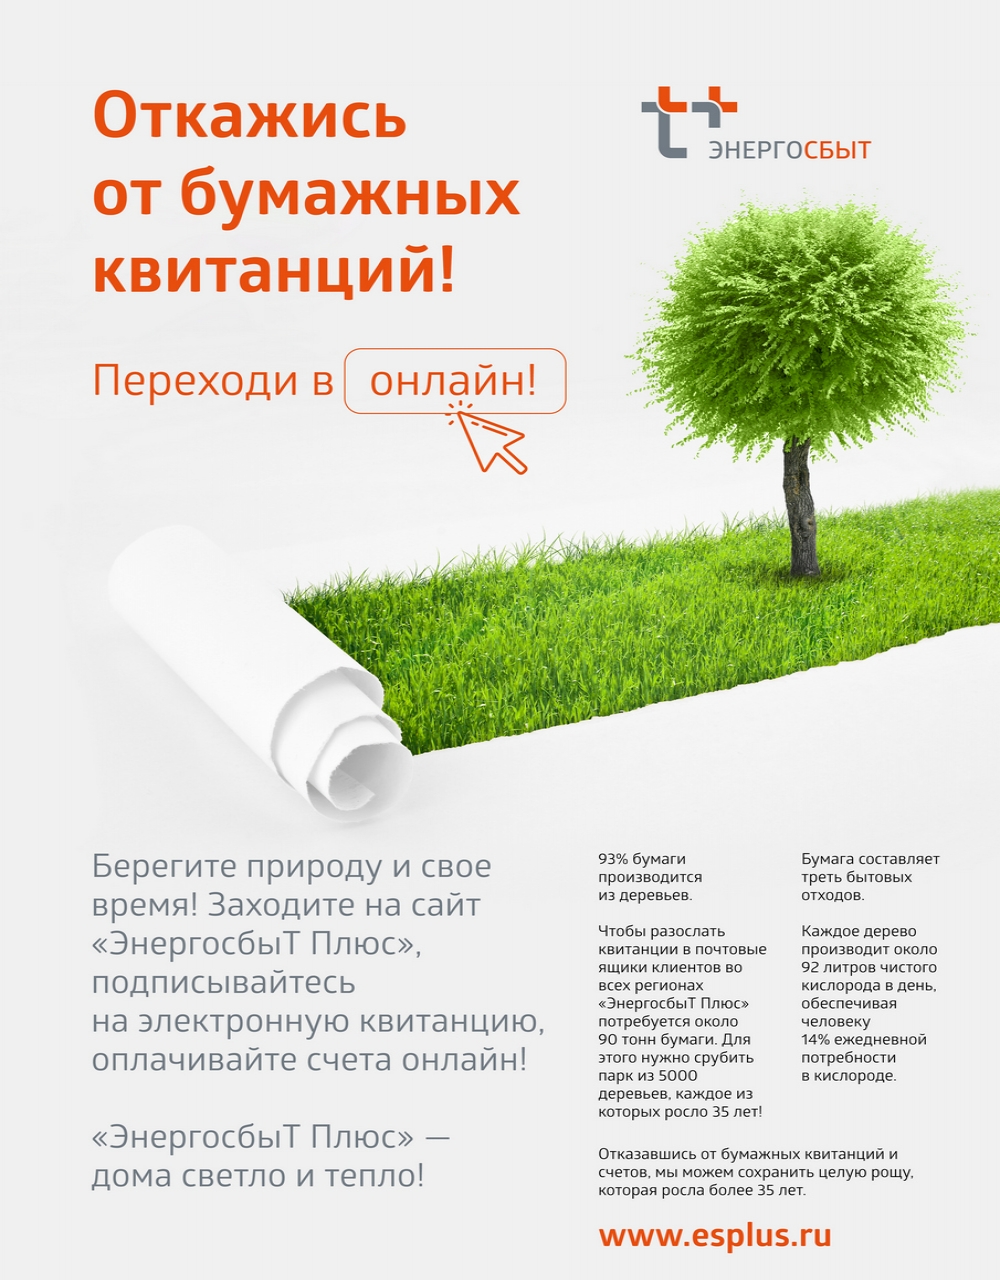 Оренбургский филиал «ЭнергосбыТ Плюс» заботится о здоровье своих клиентов и рекомендует подписаться на услугу «Электронная квитанция». 